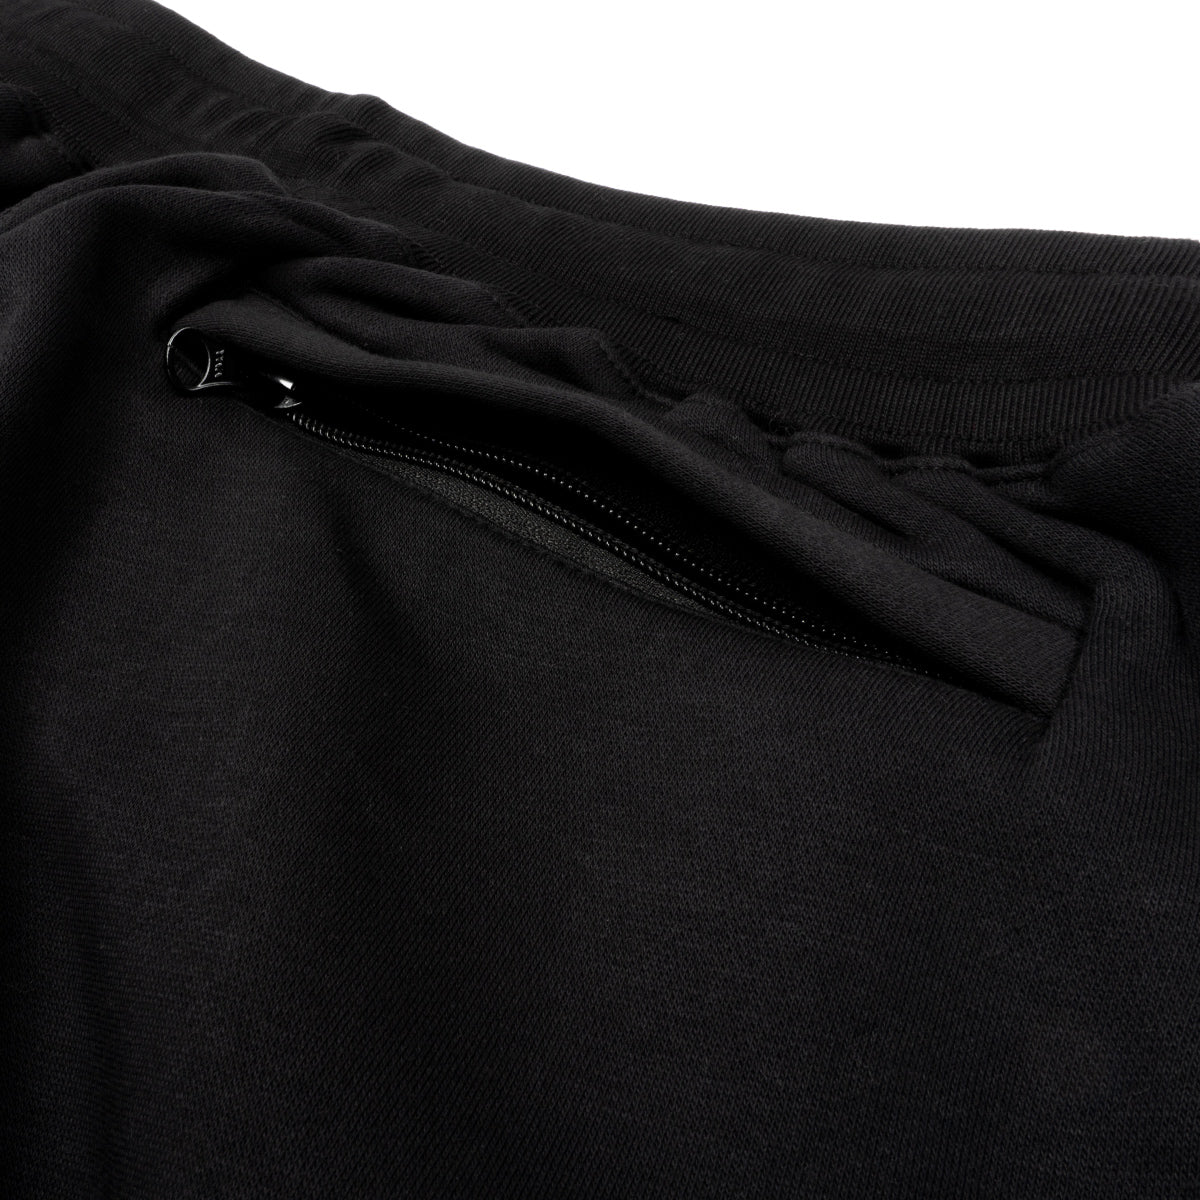 Lost Art Canada - black leisure suit sweatsuit sweatpants back pocket view